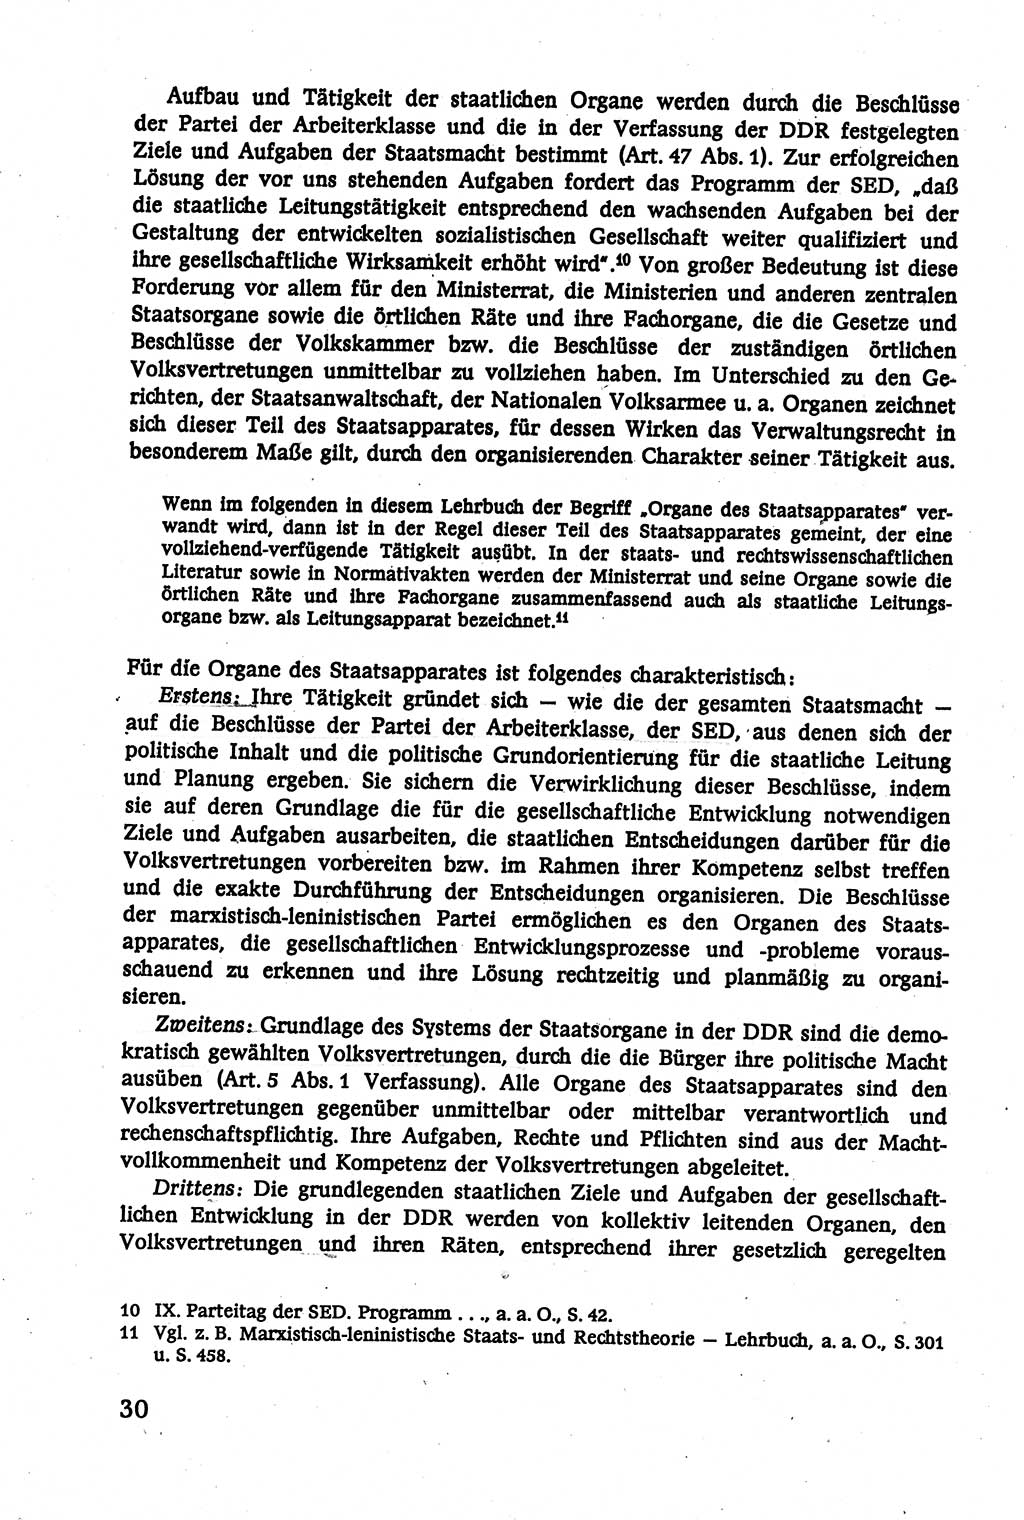 Verwaltungsrecht [Deutsche Demokratische Republik (DDR)], Lehrbuch 1979, Seite 30 (Verw.-R. DDR Lb. 1979, S. 30)